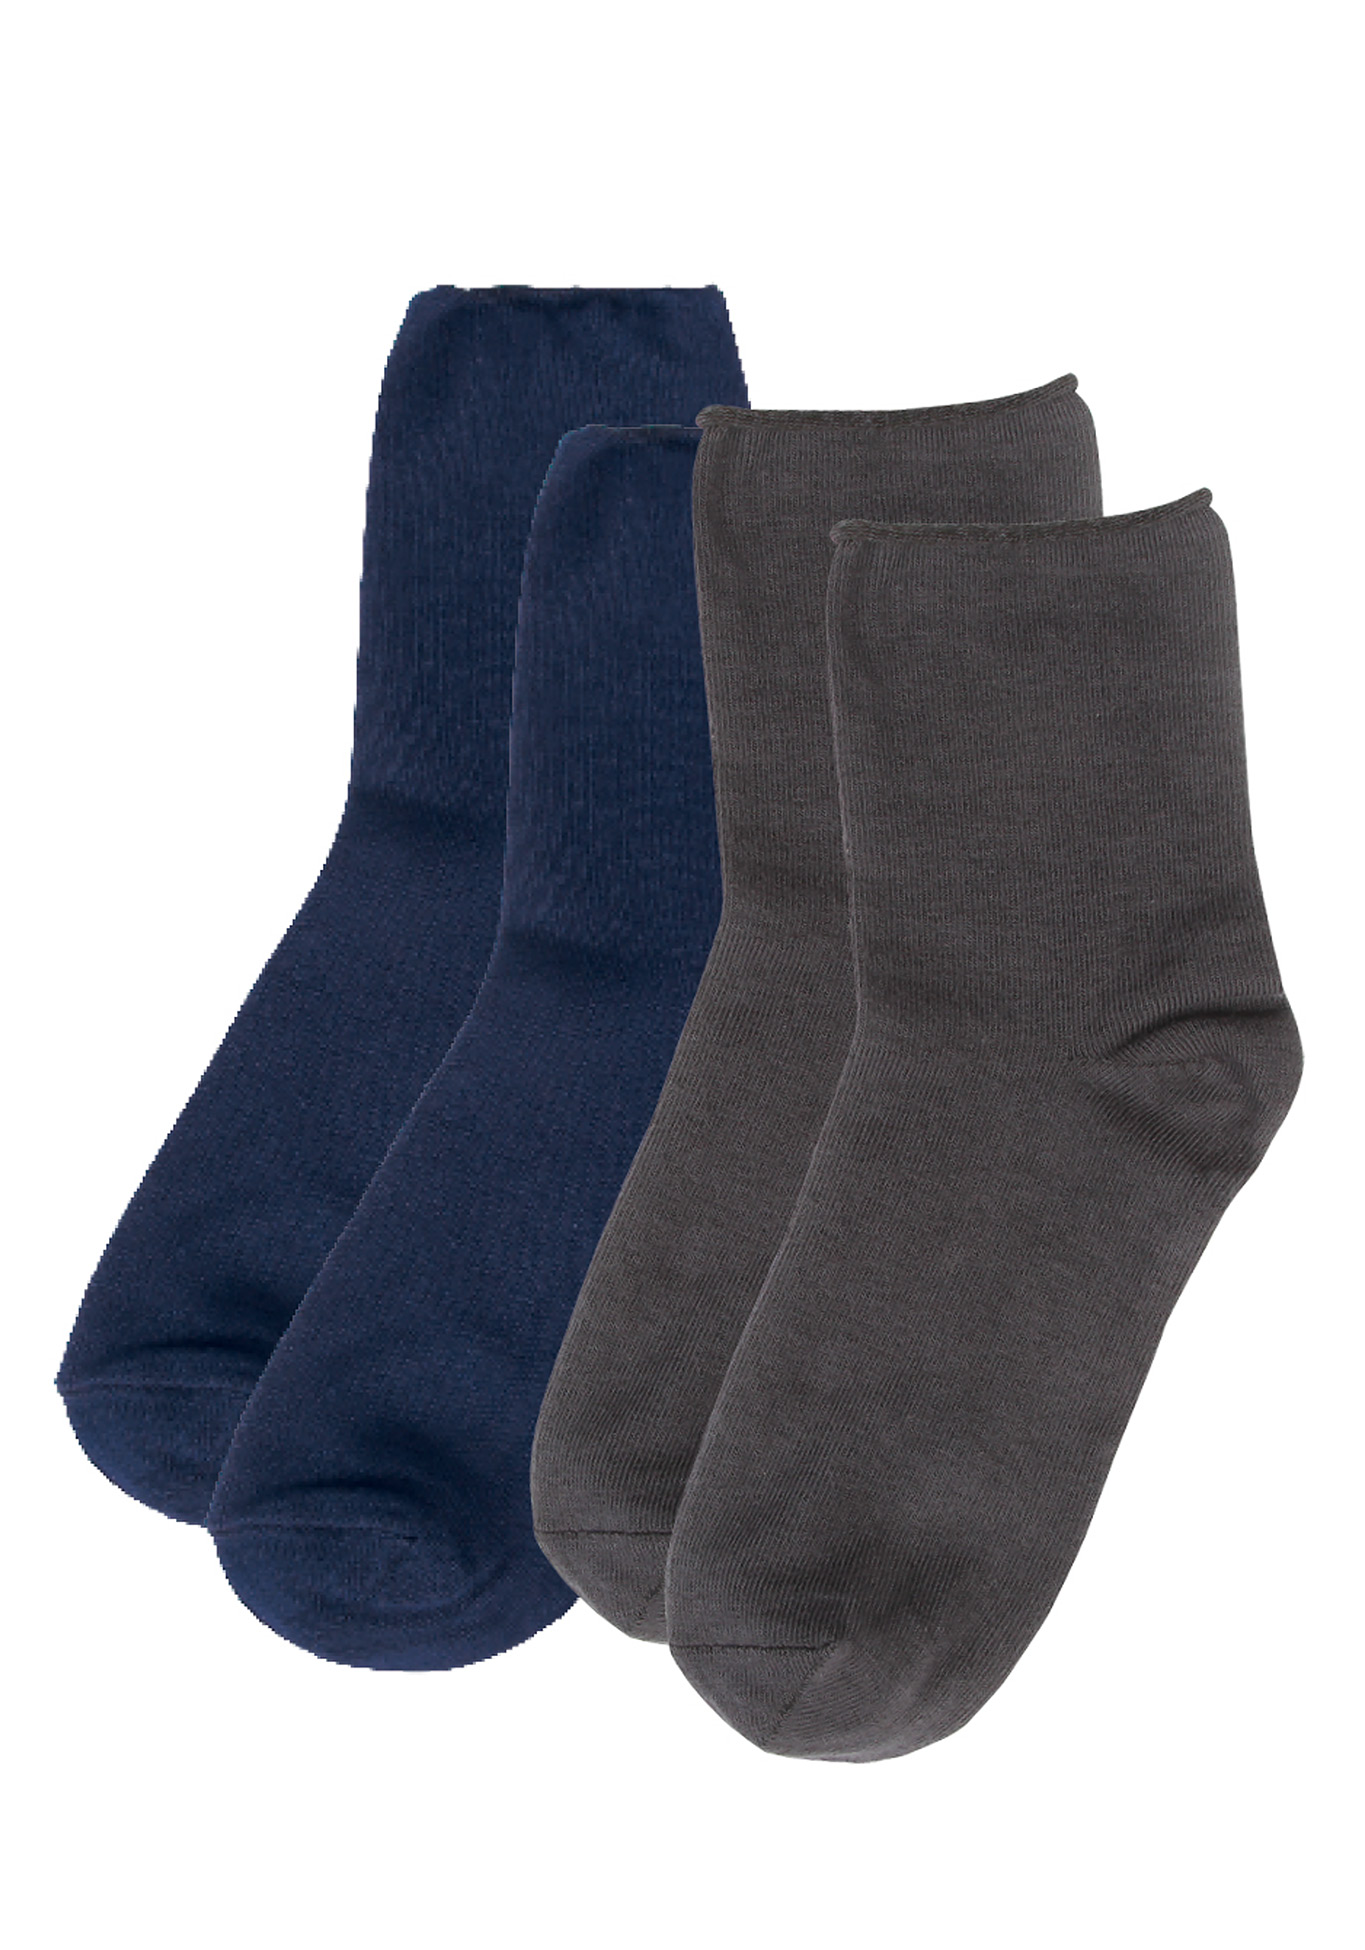 Специальные носки без резинки «Комфорт», цвет светло-серый+черный, размер 35-37 - фото 1